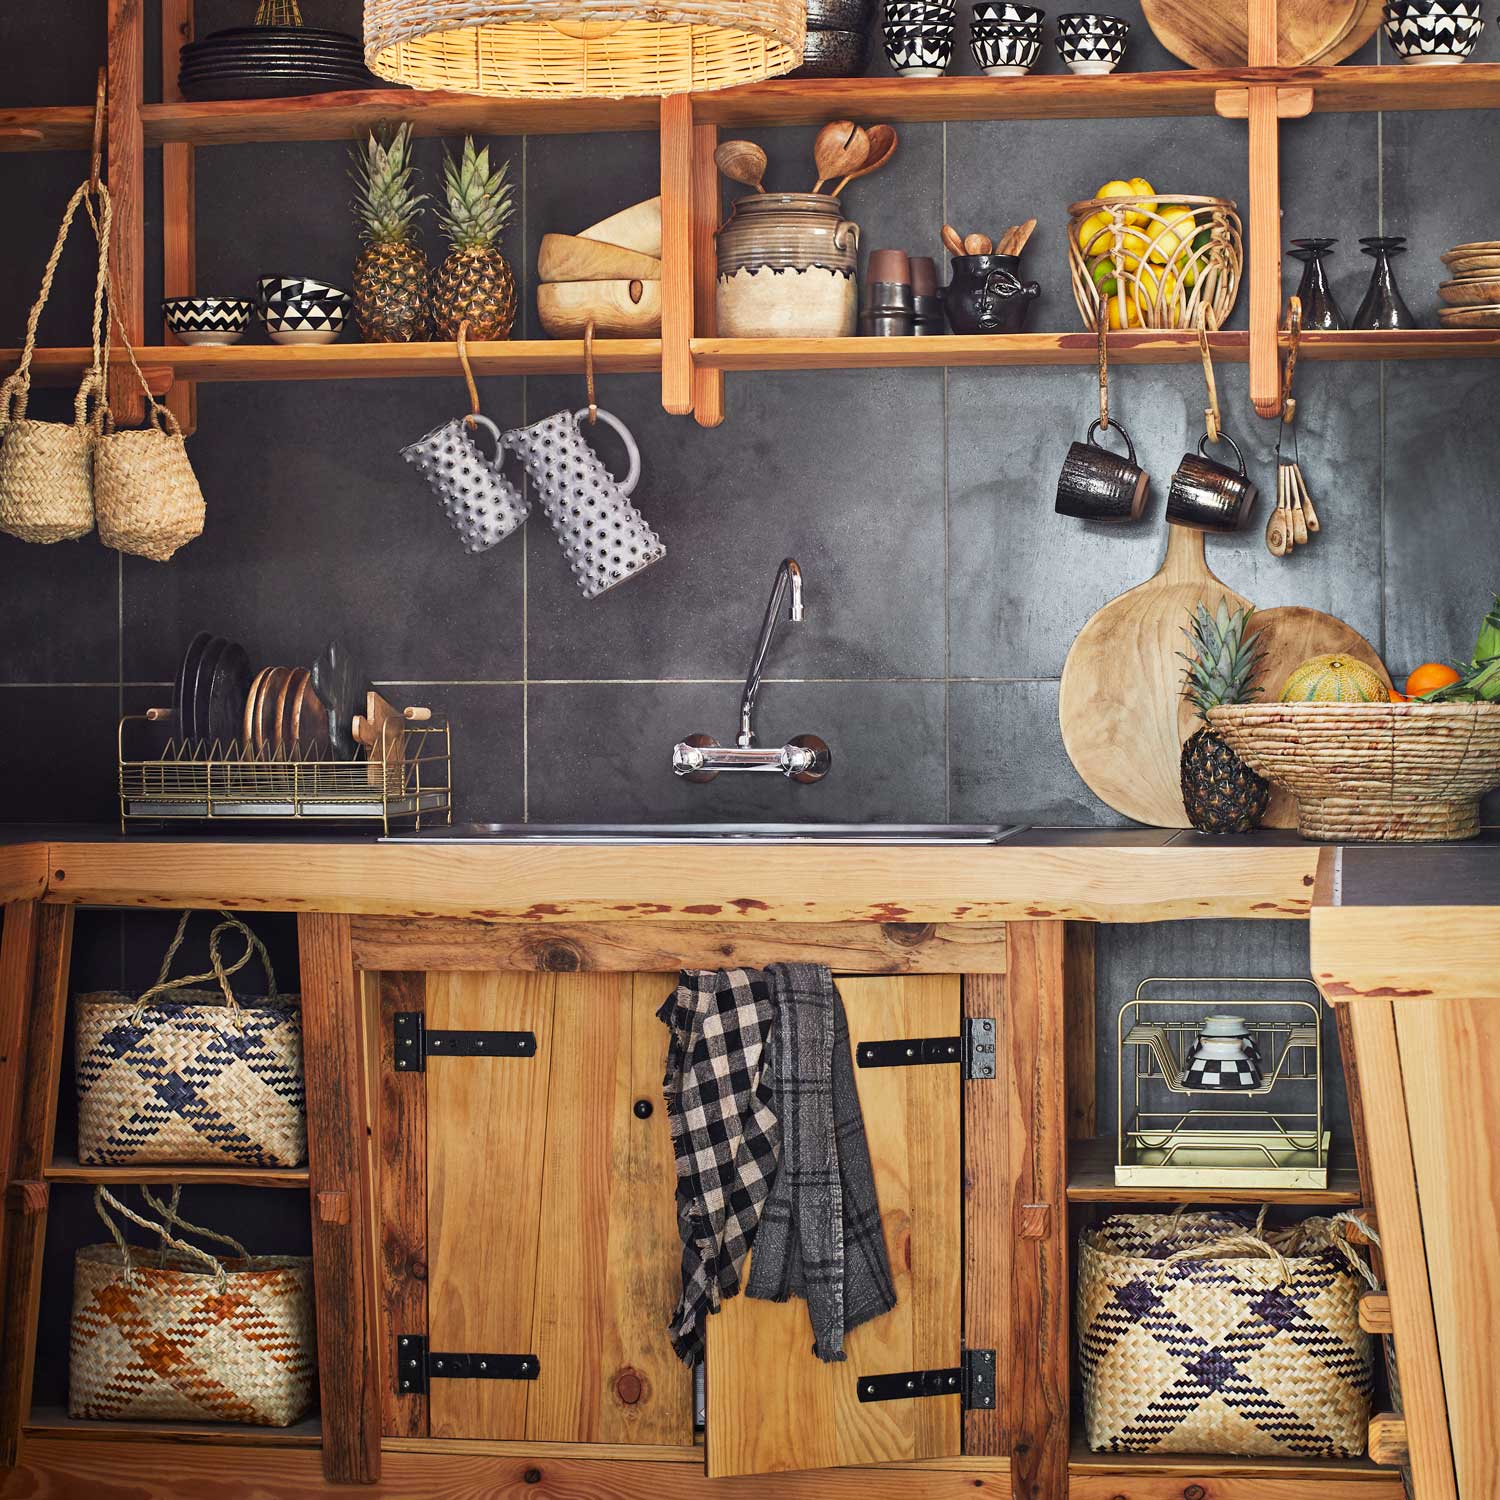 21 Finnish dish drying cabinet racks ideas